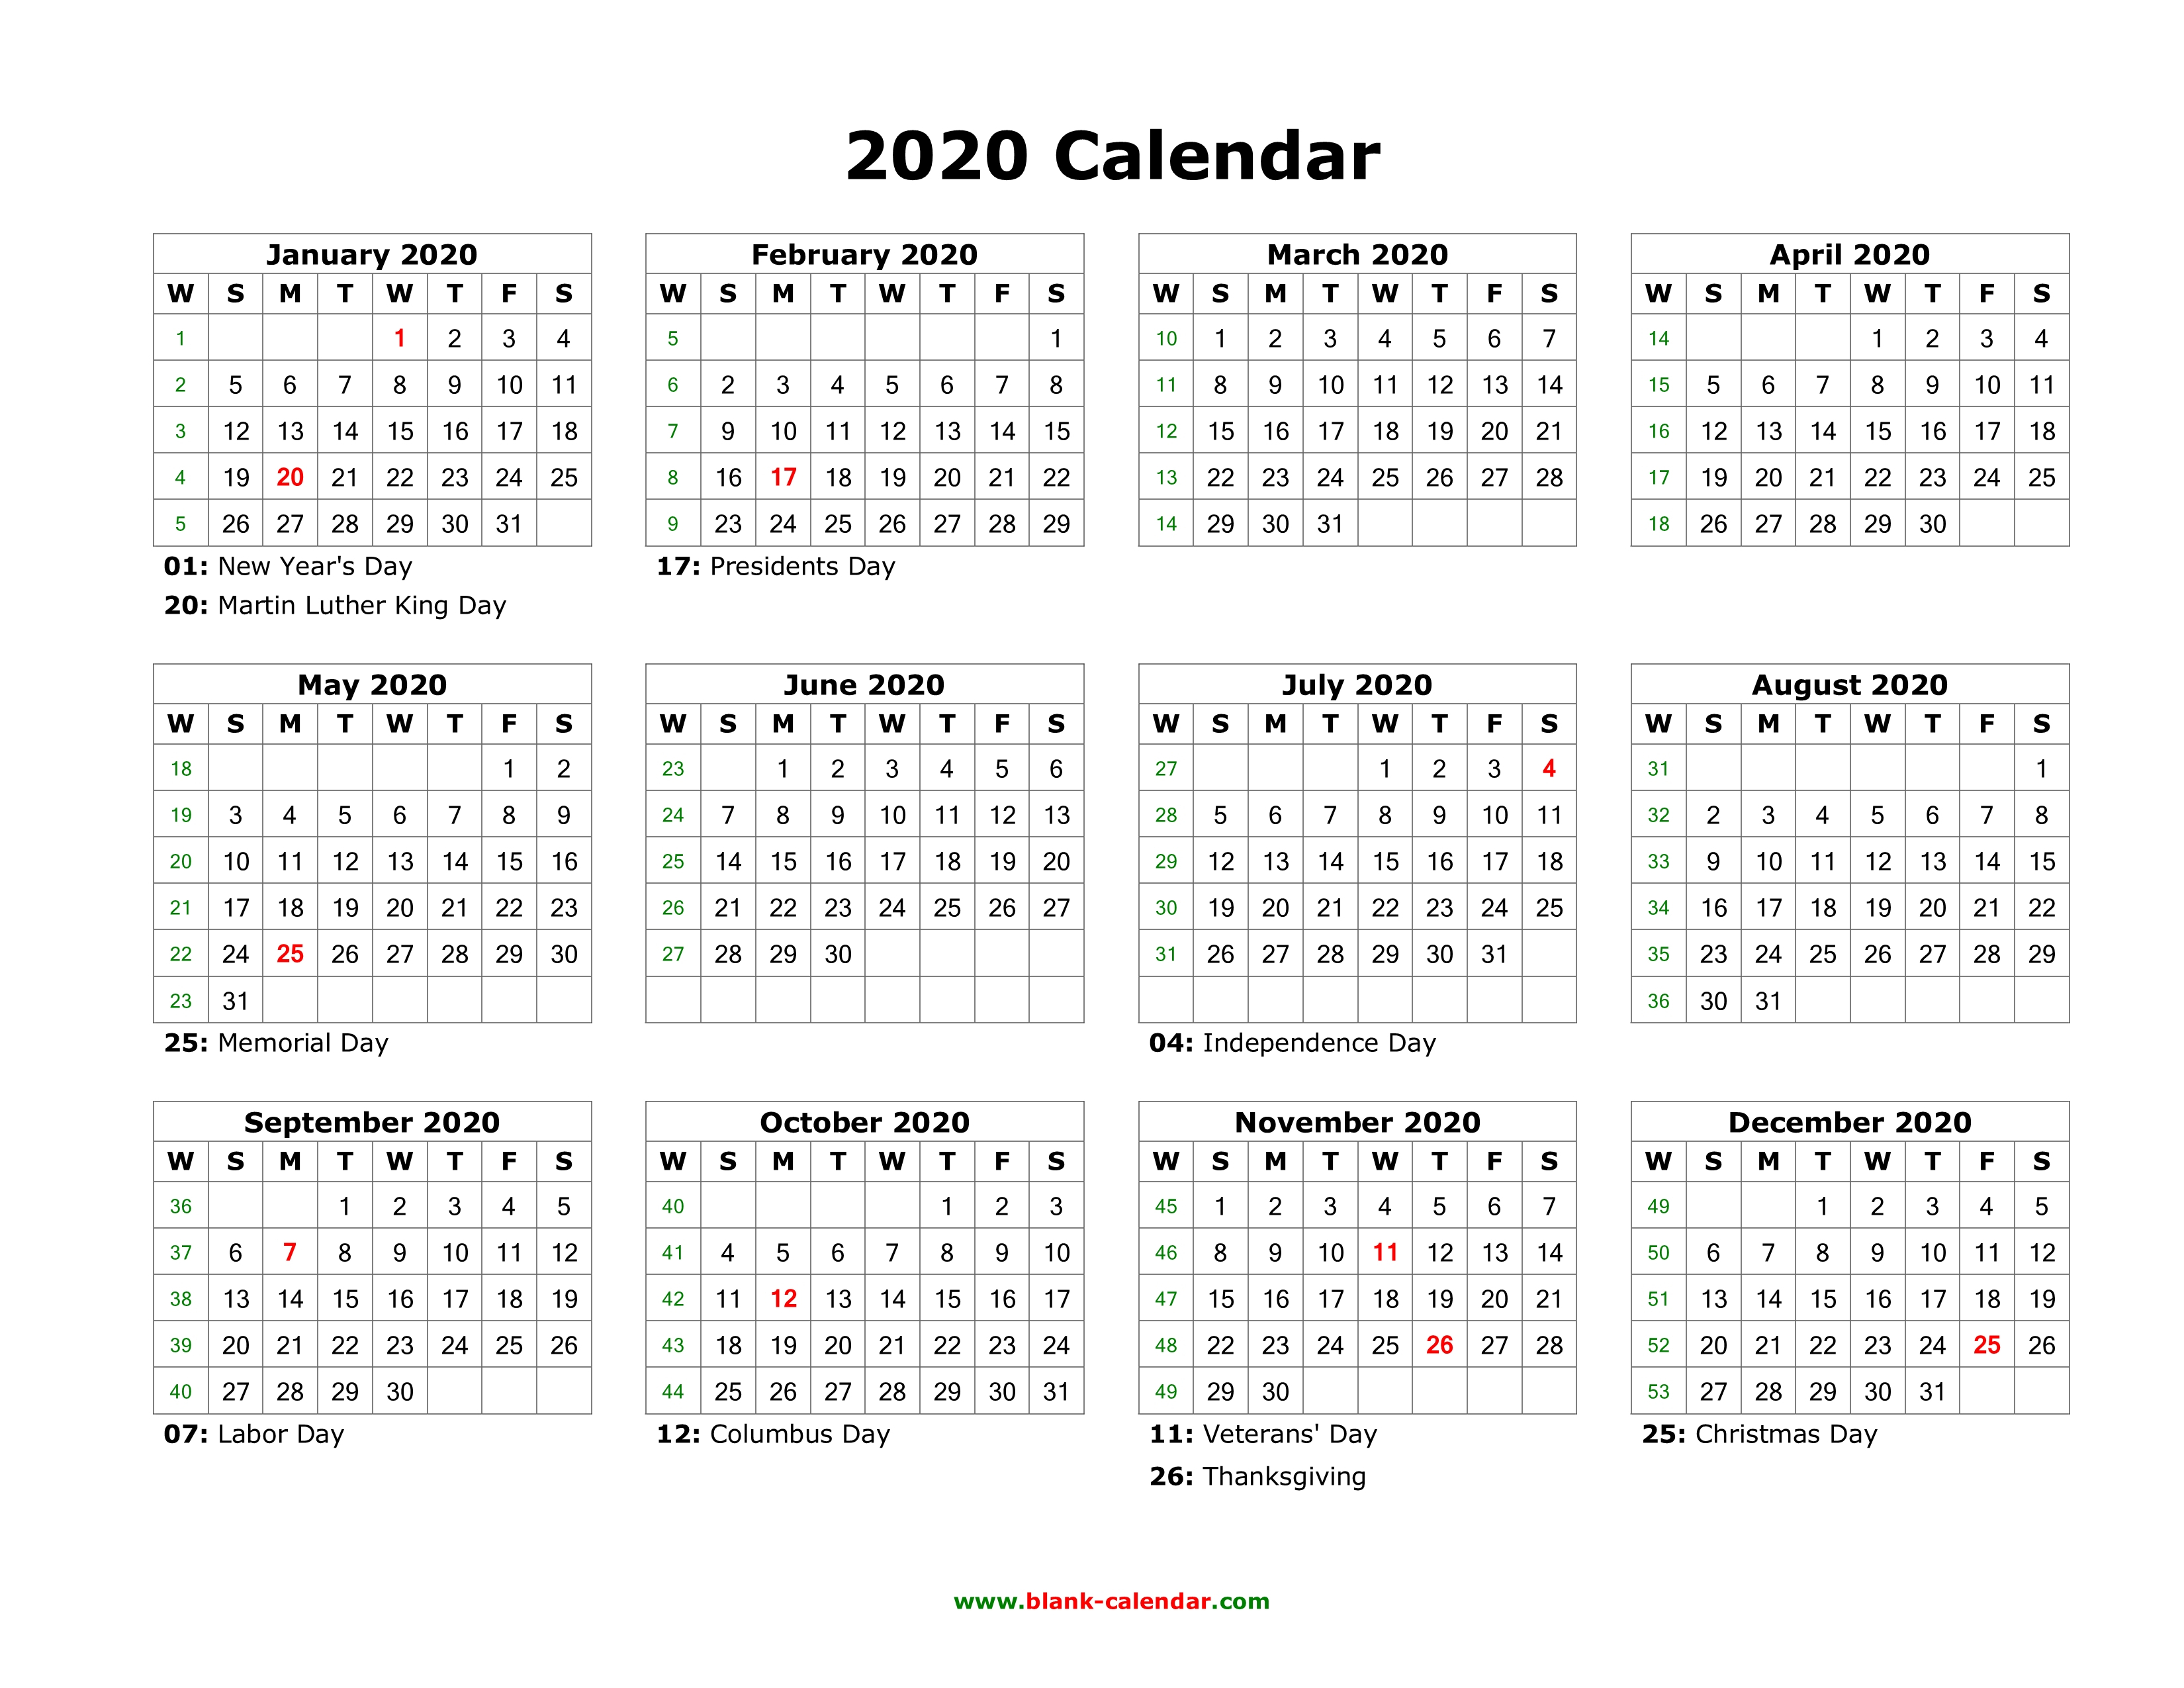 Blank Calendar 2020 | Free Download Calendar Templates inside Google Calendar Template 2020